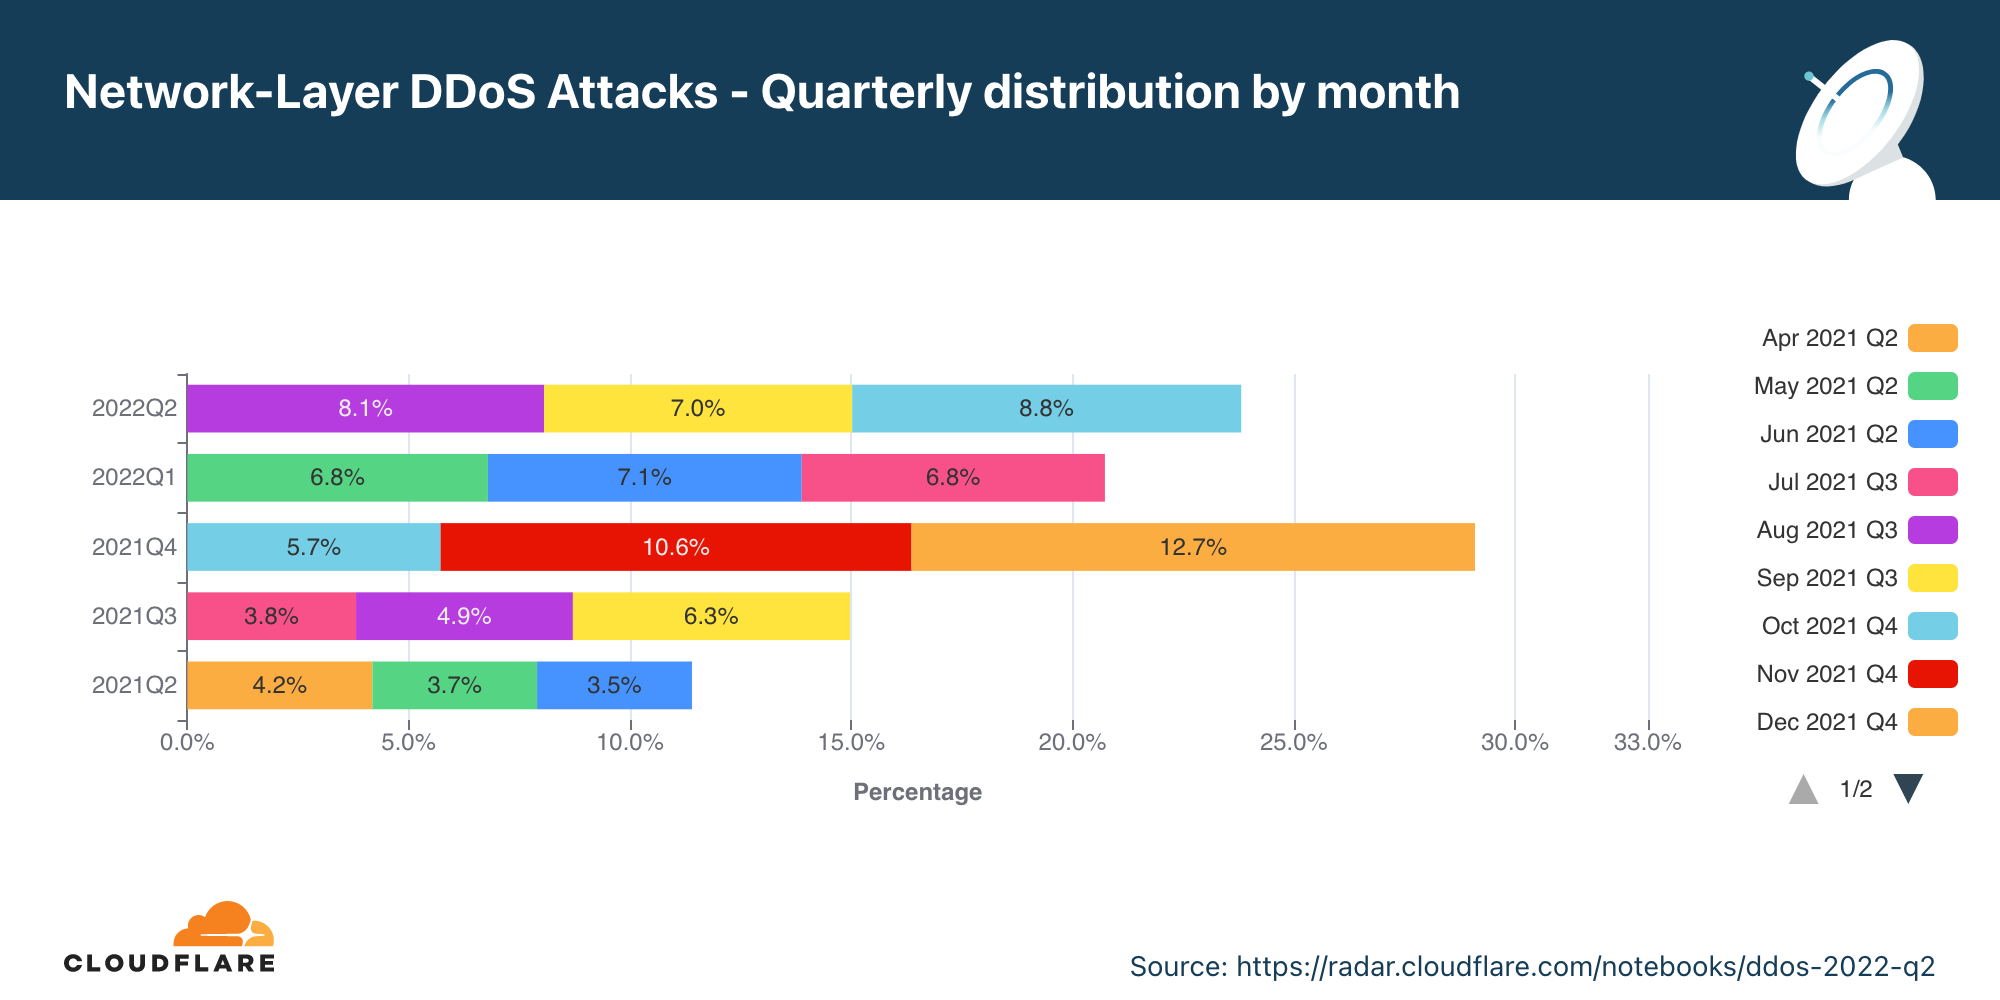 Graphique illustrant la répartition annuelle des attaques DDoS sur la couche réseau relevées chaque mois au cours des 12 derniers mois